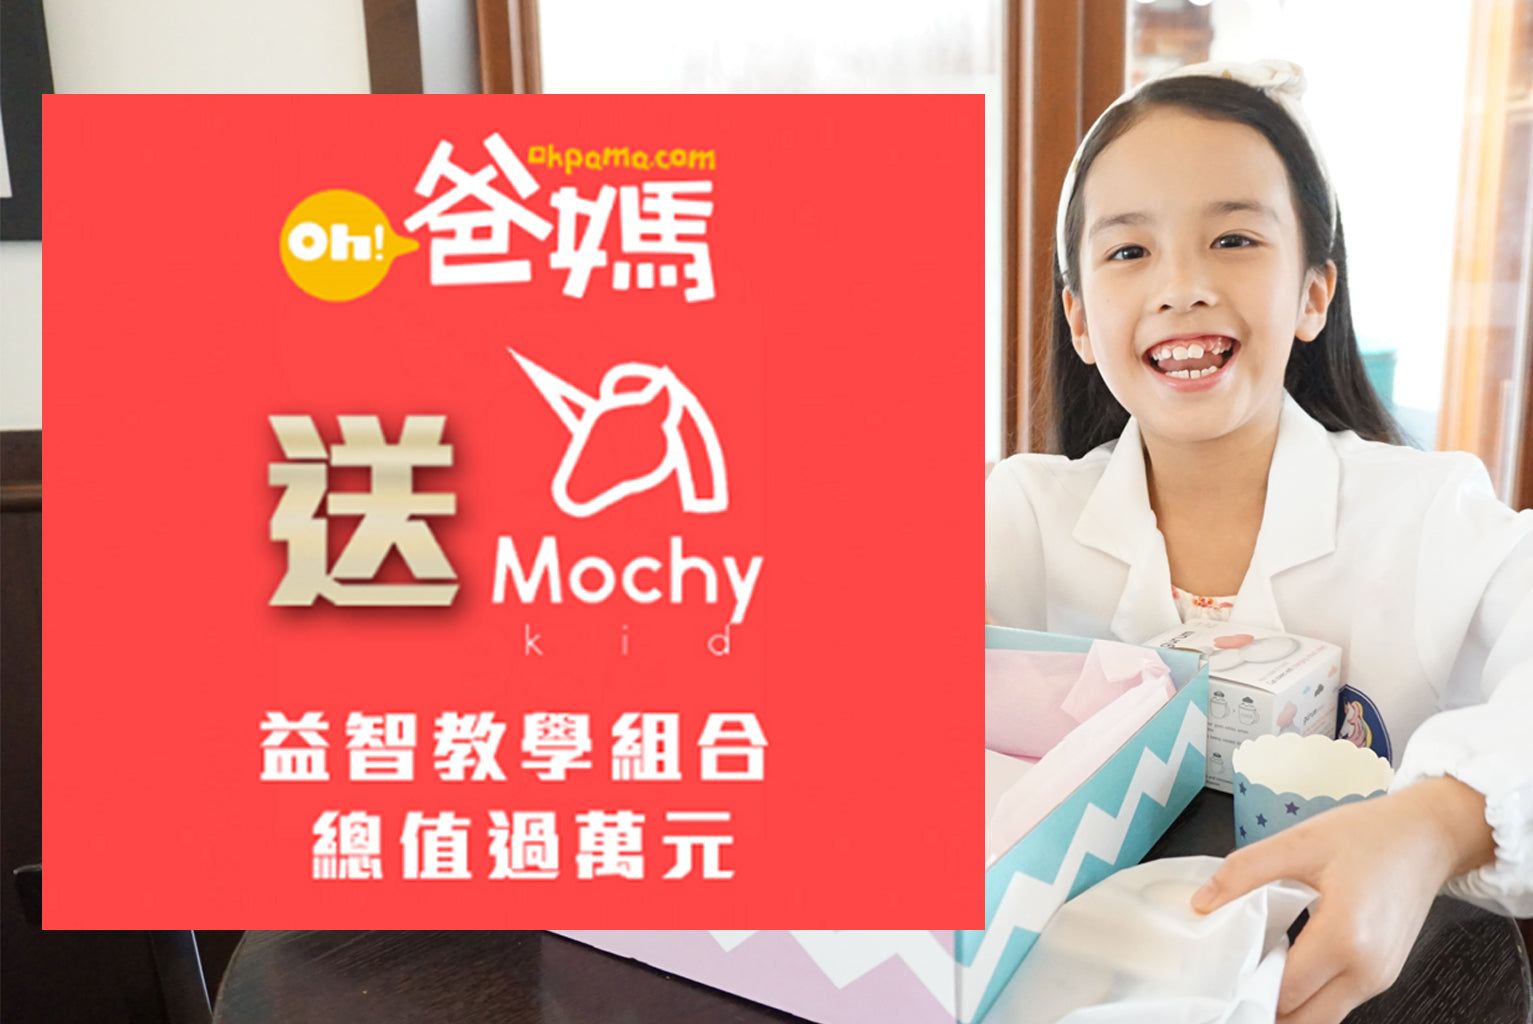 Mochy Kid x Ohpama (Oh! 爸媽) giveaways